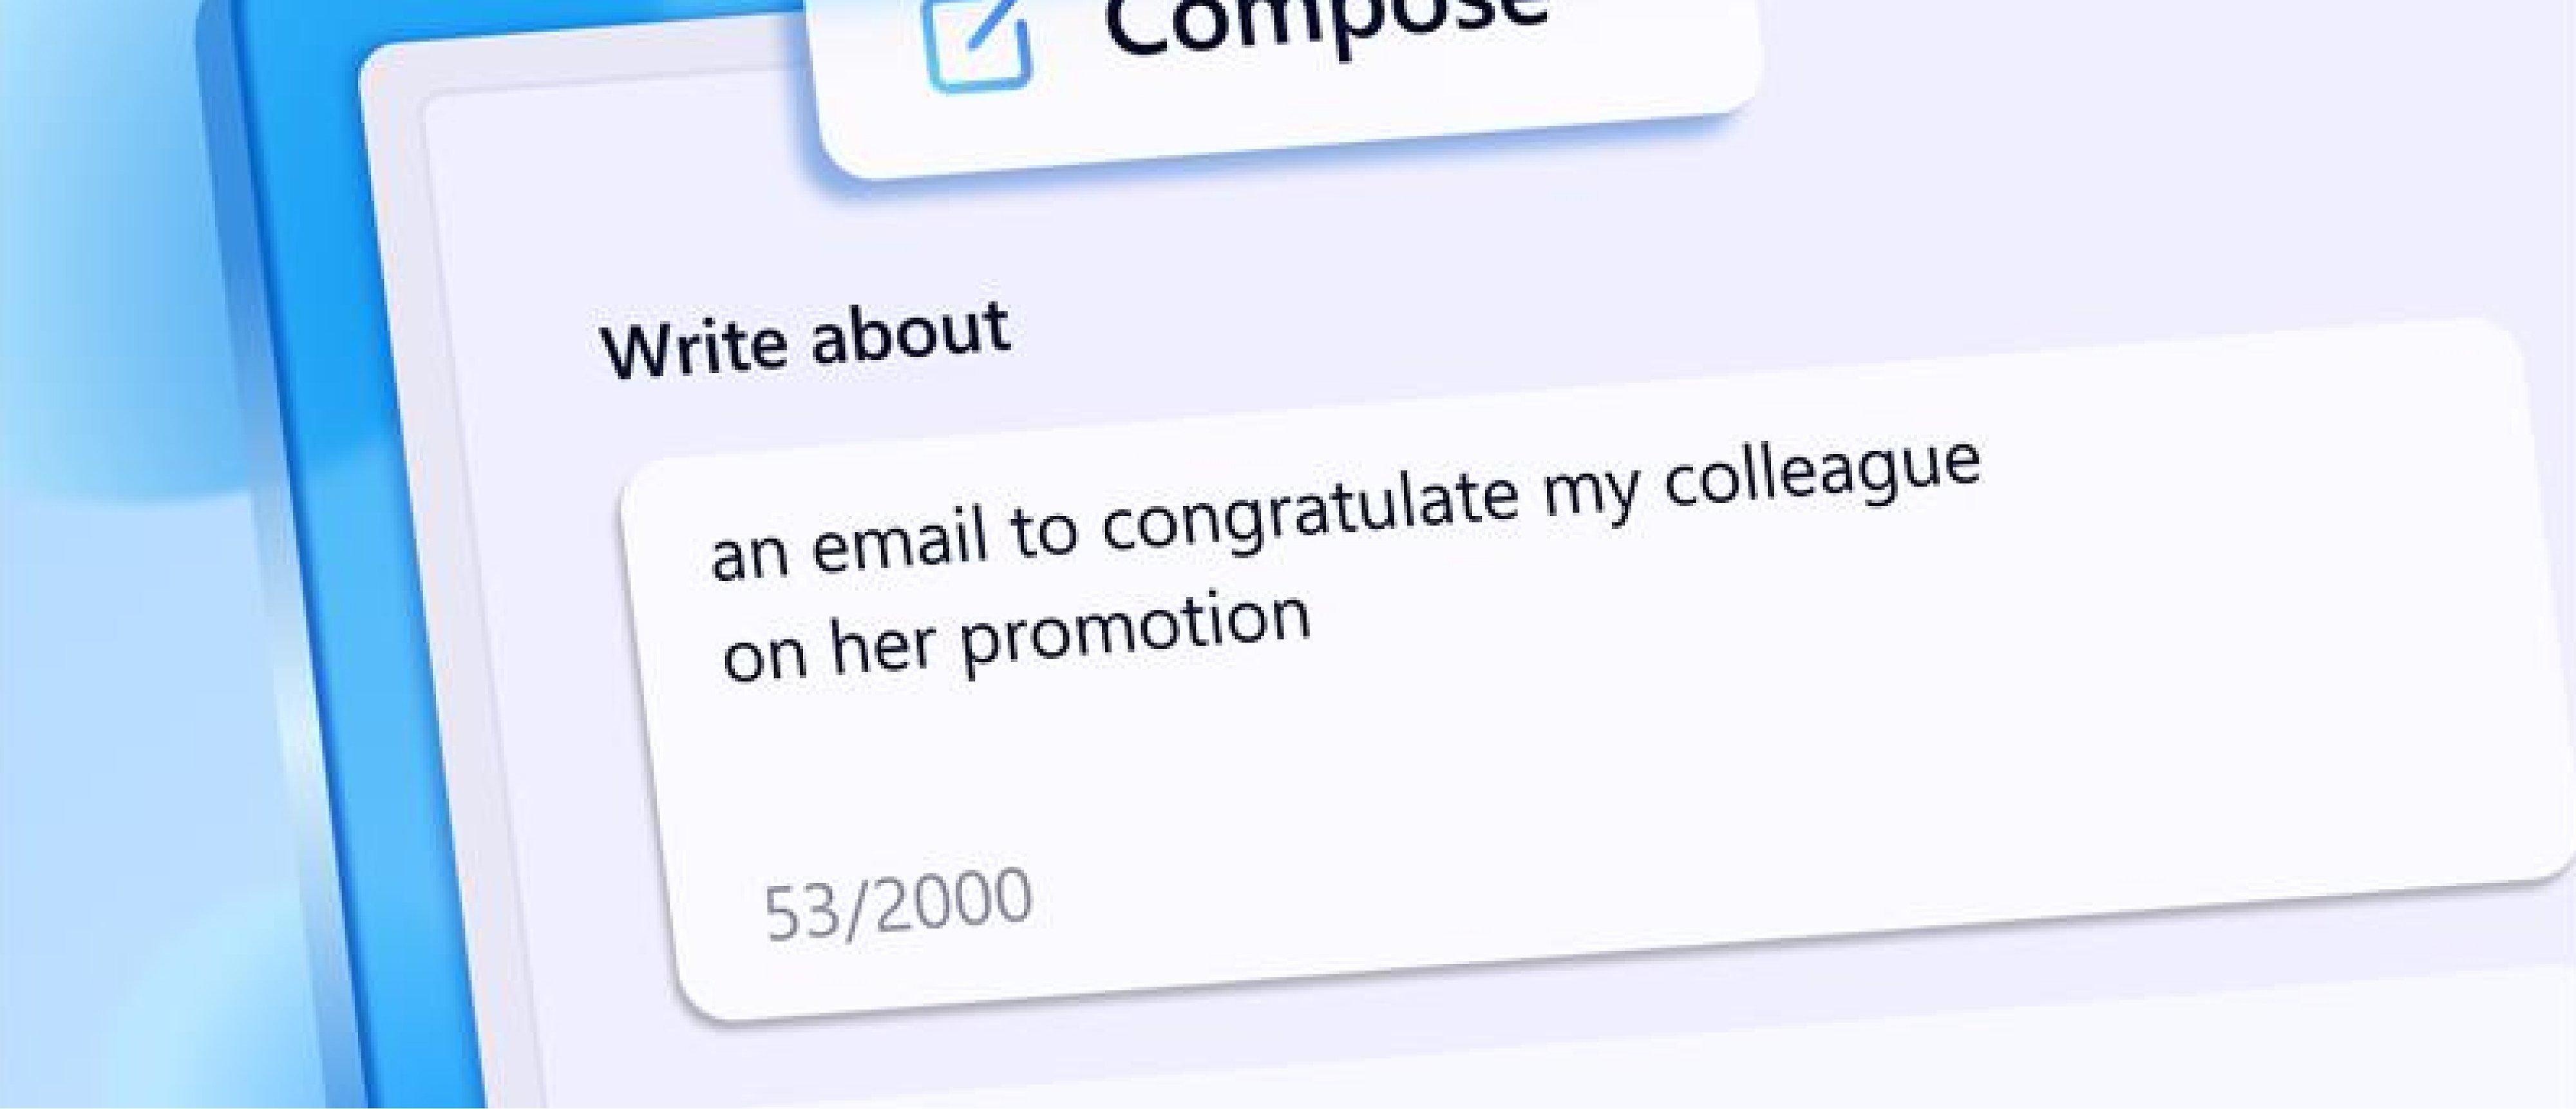 Terfi eden iş arkadaşını kutlama amaçlı e-posta yazmaya ilişkin yapay zeka isteminin ekran görüntüsü